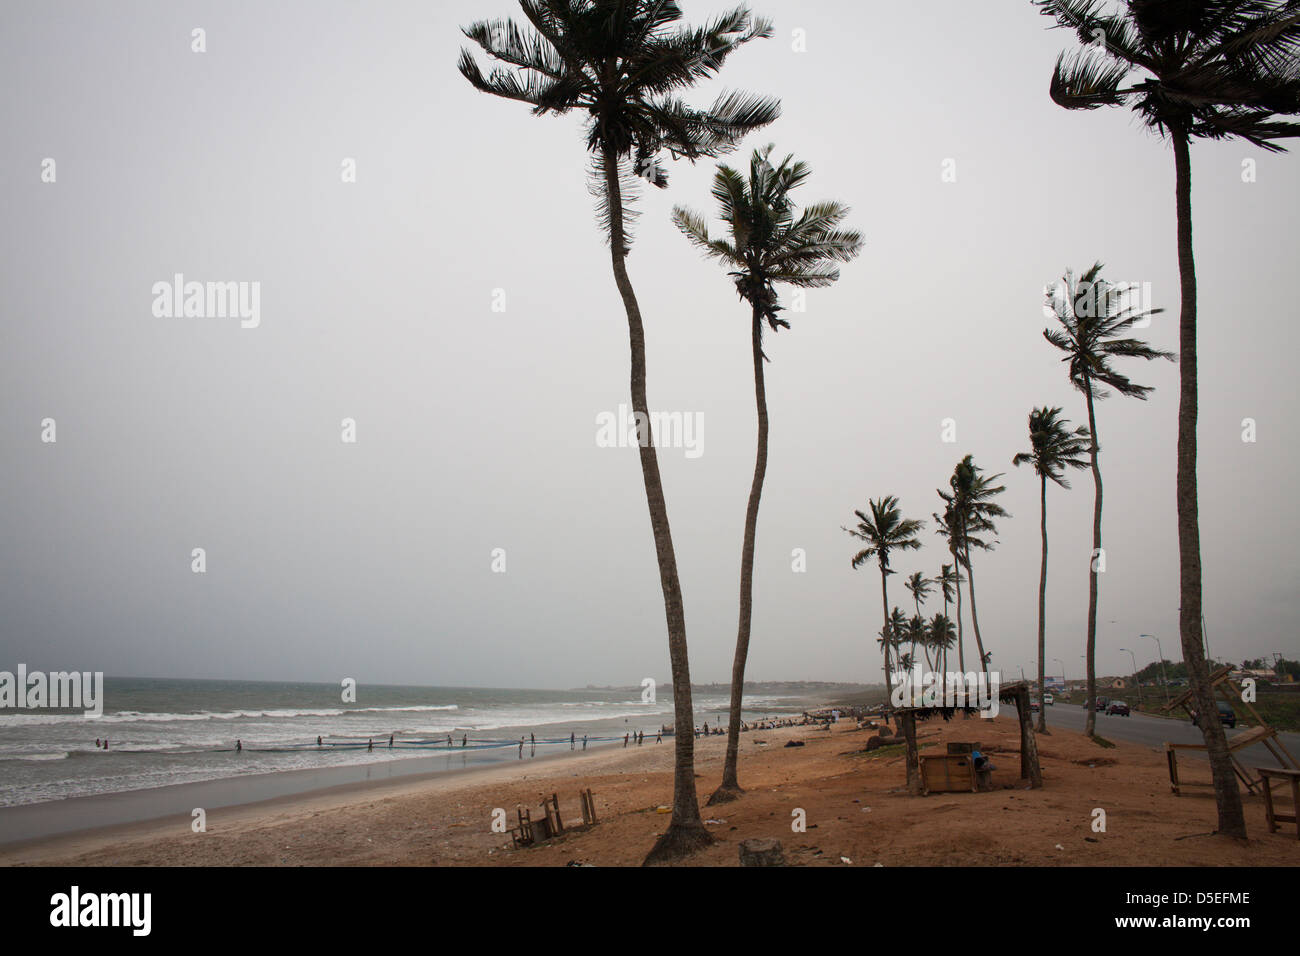 La côte atlantique près de Accra, Ghana. Banque D'Images